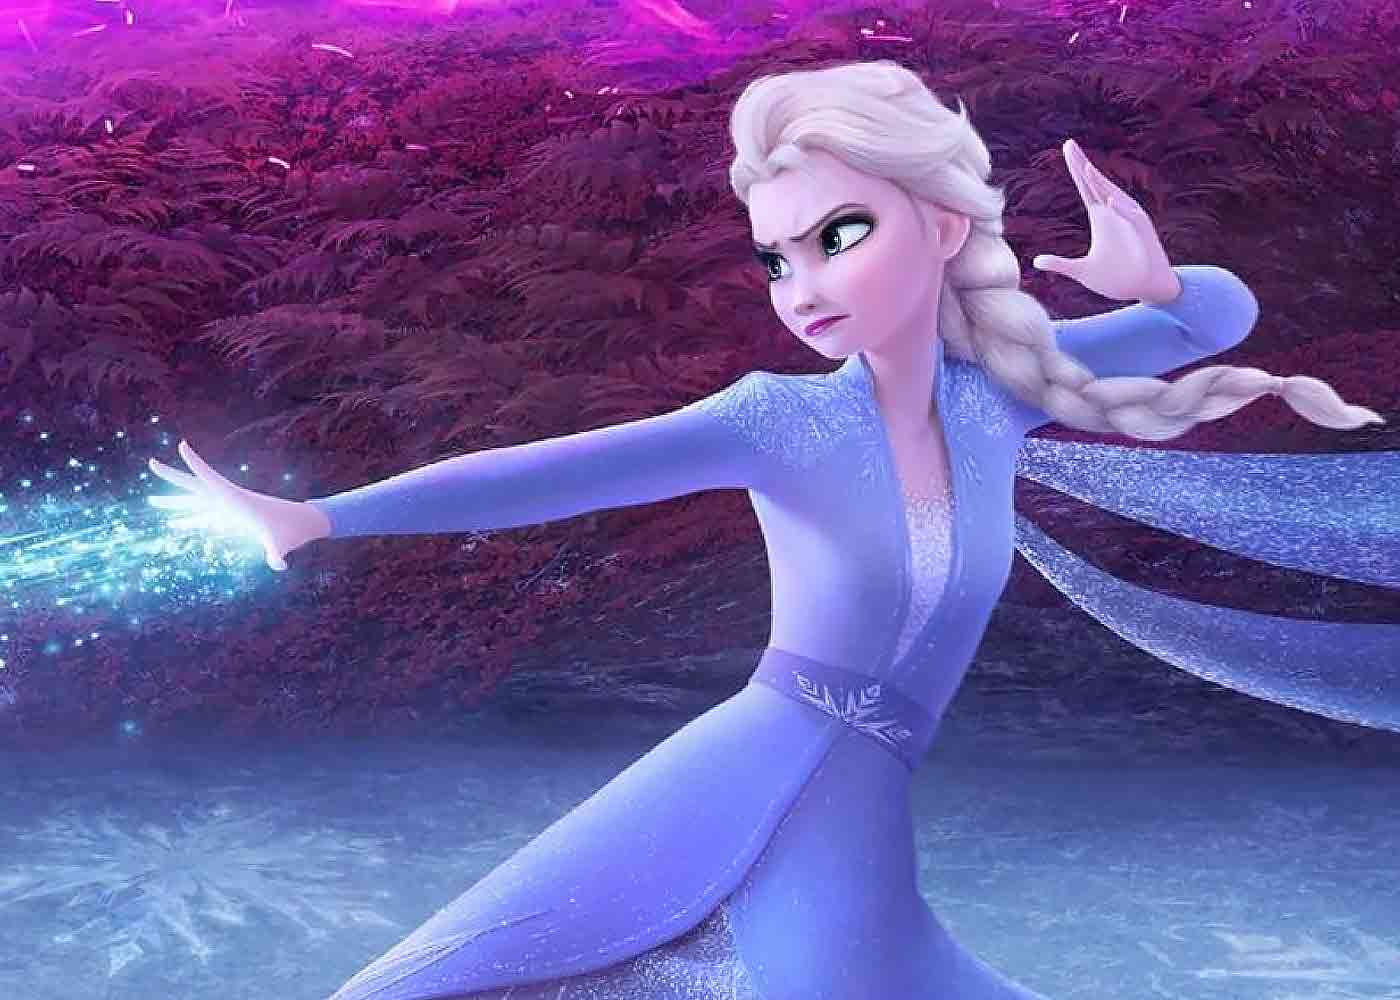 Disney Akan Produksi TV Series Frozen? - Greenscene